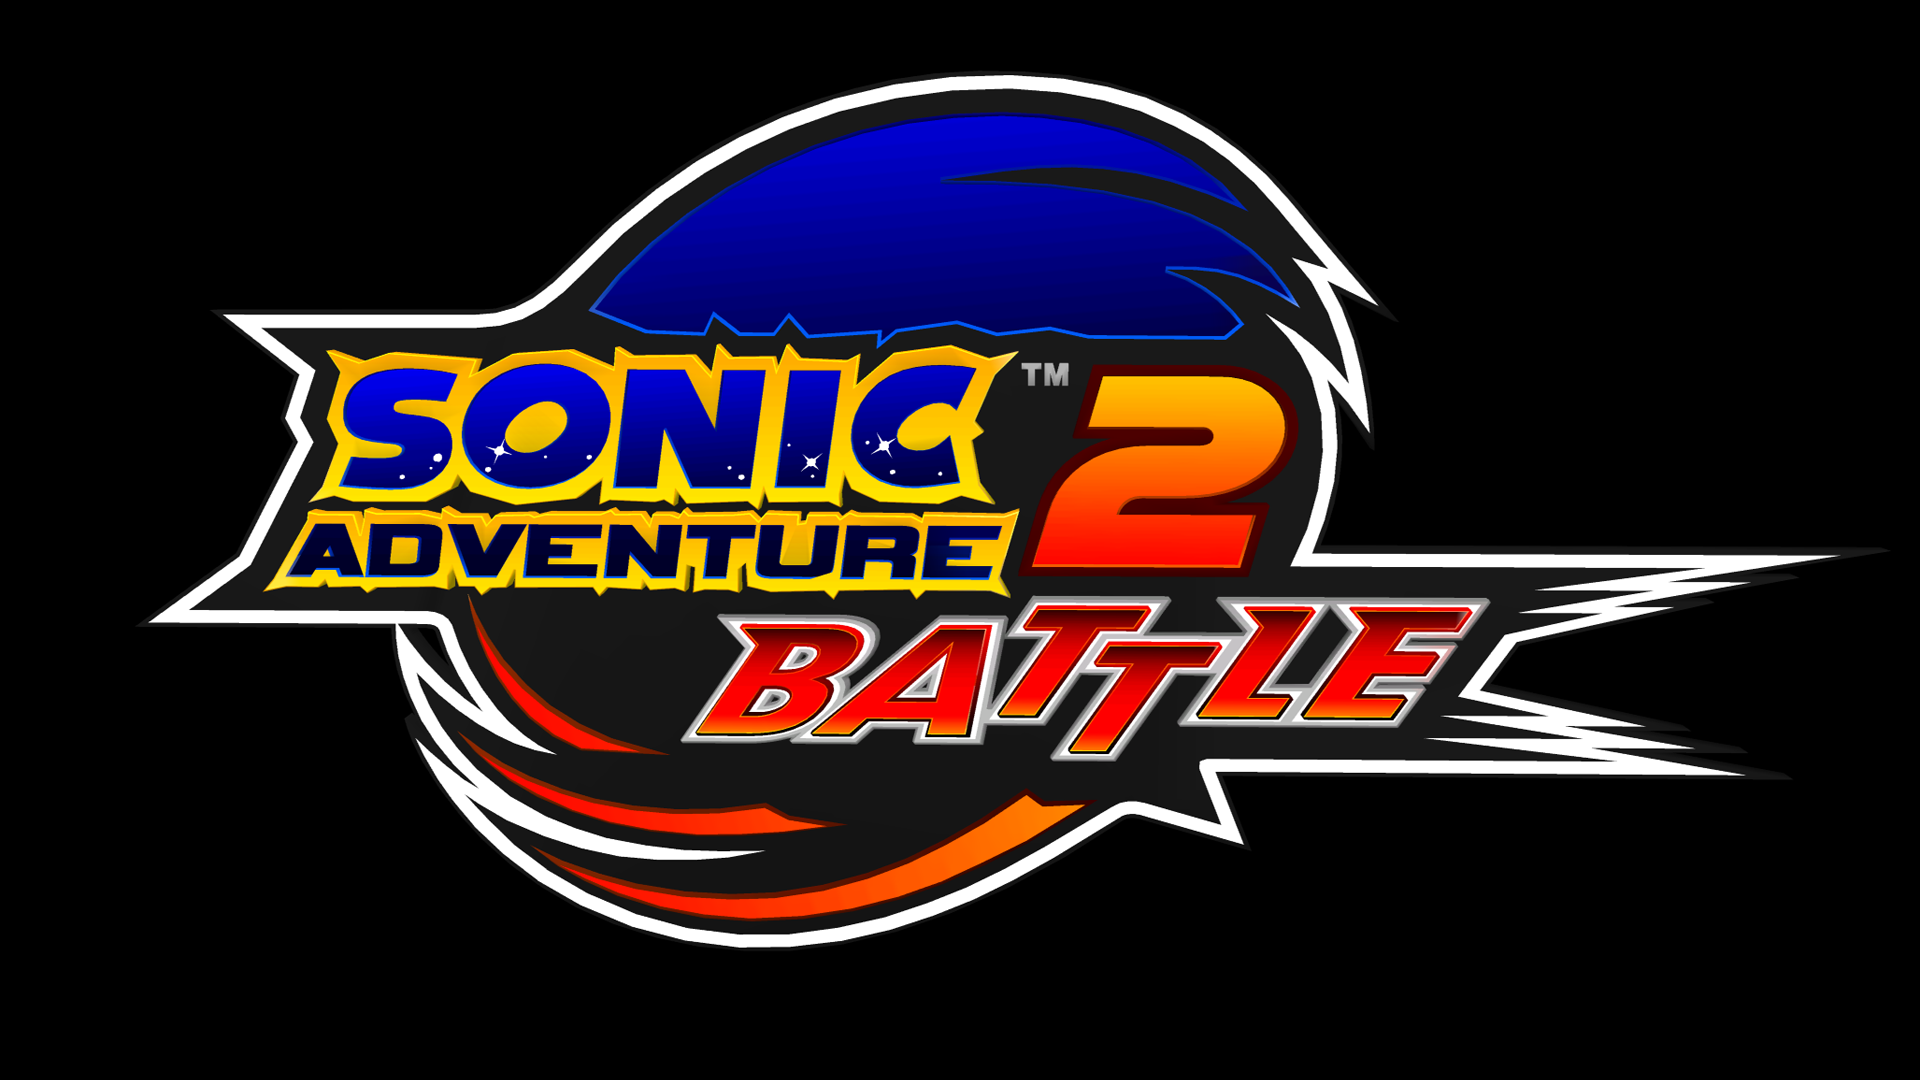 Sonic Adventure 2 Logo